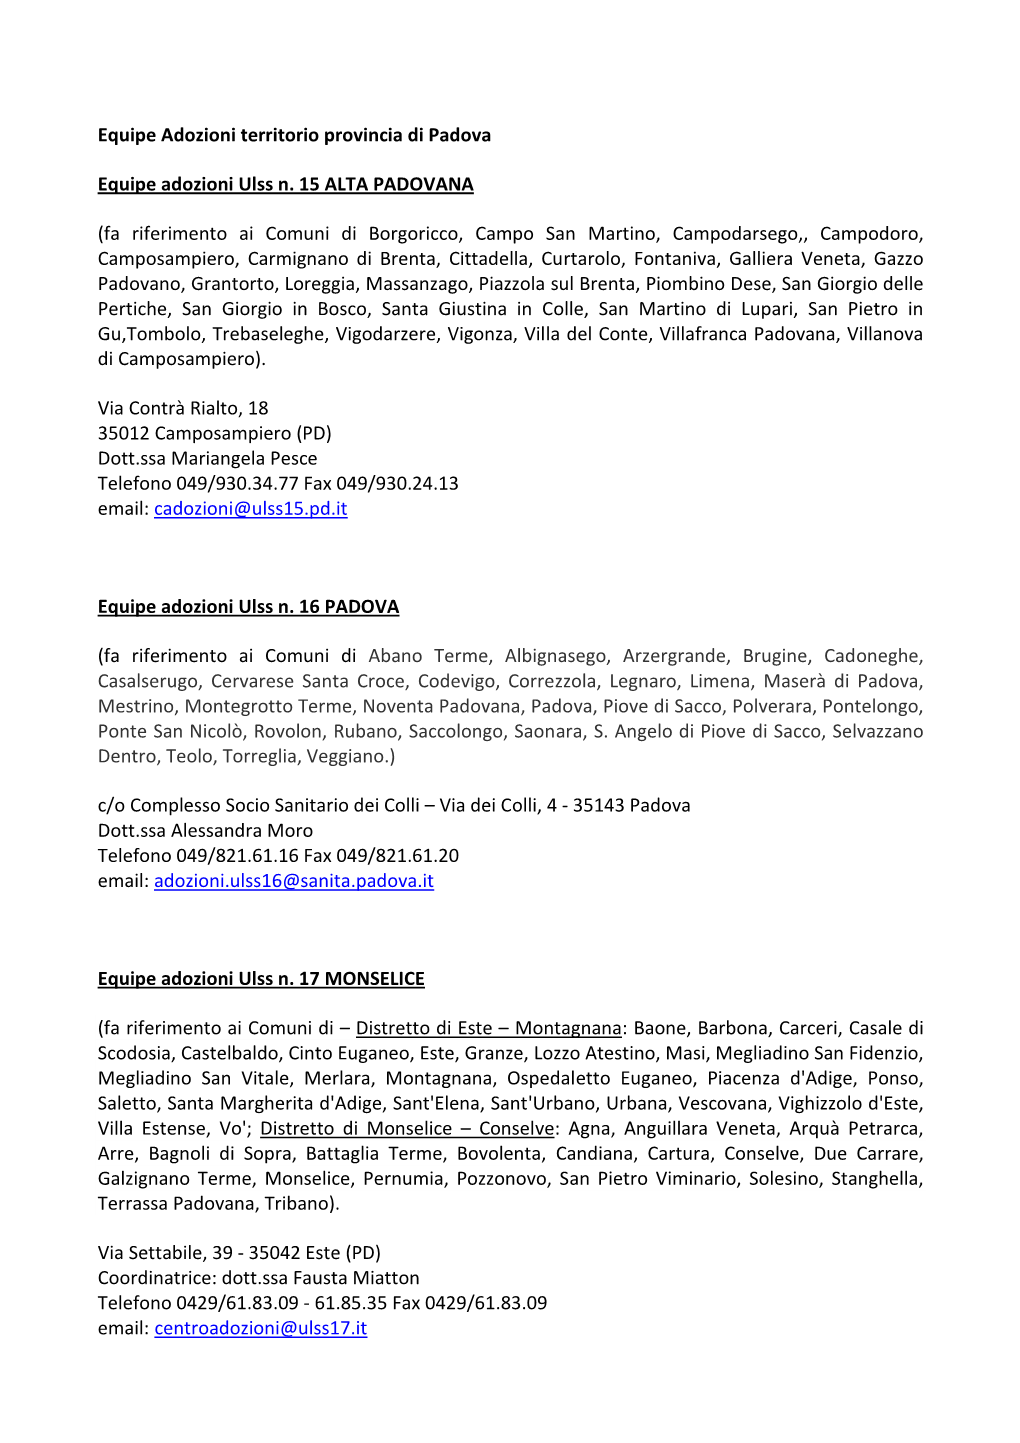 Equipe Adozioni Territorio Provincia Di PADOVA GENNAIO 2014